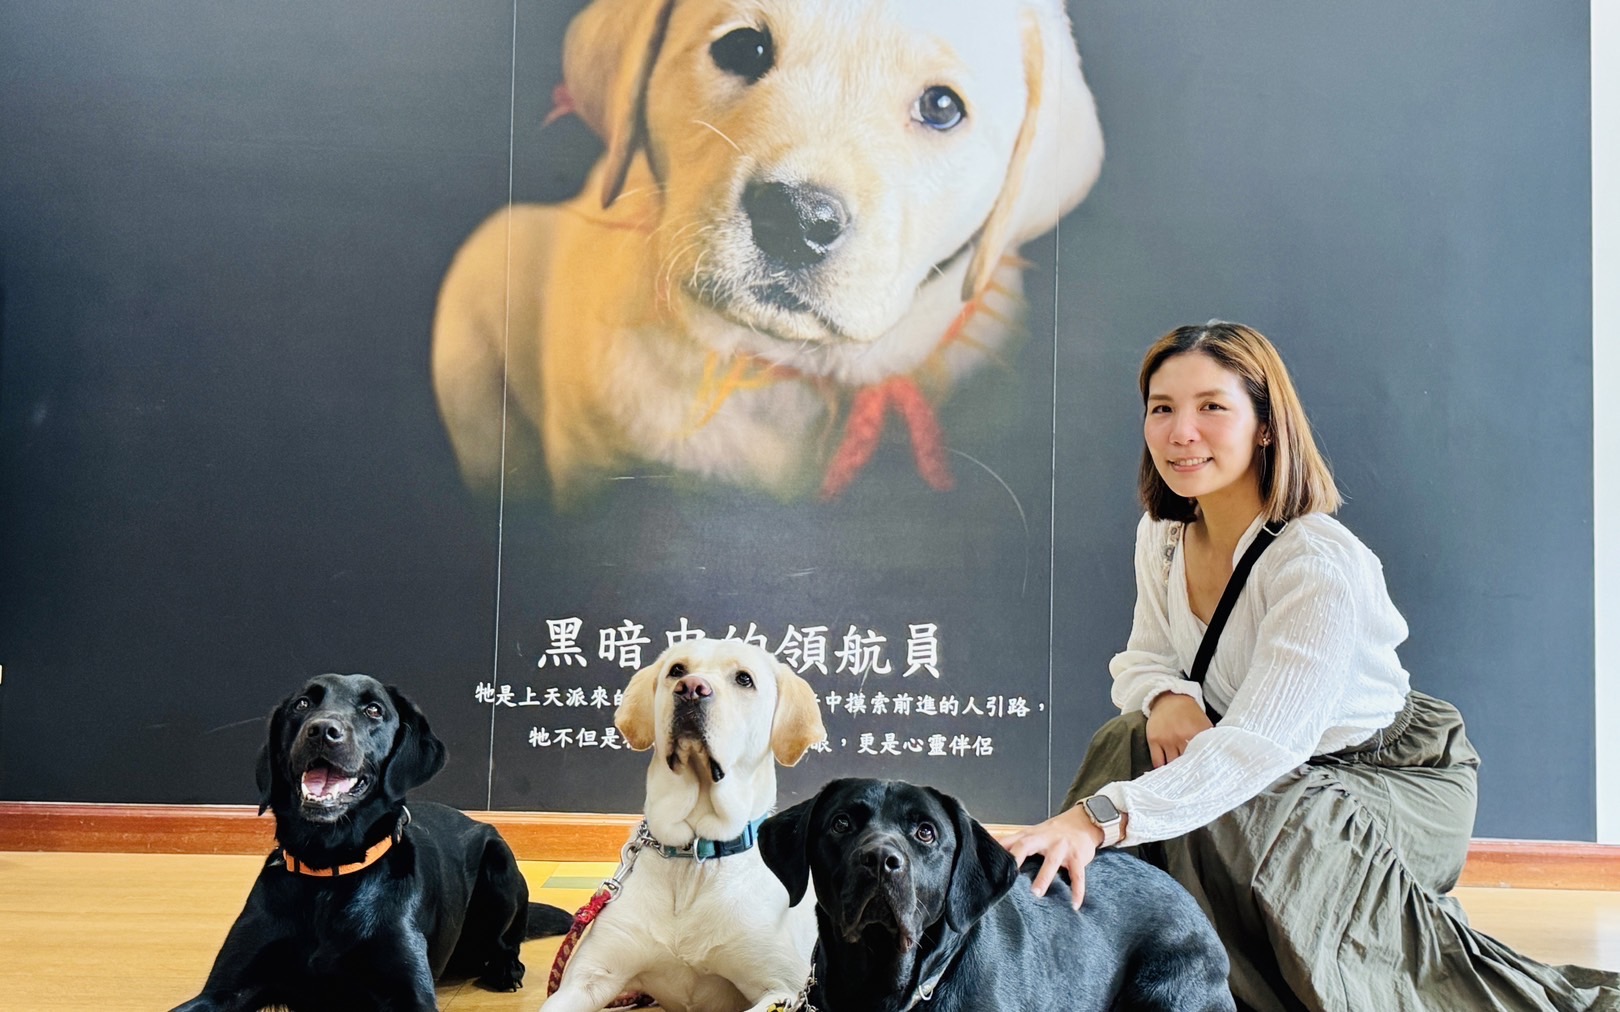  百年古蹟滬尾礮臺「毛毛」的 導盲犬古蹟講座免費報名！ 